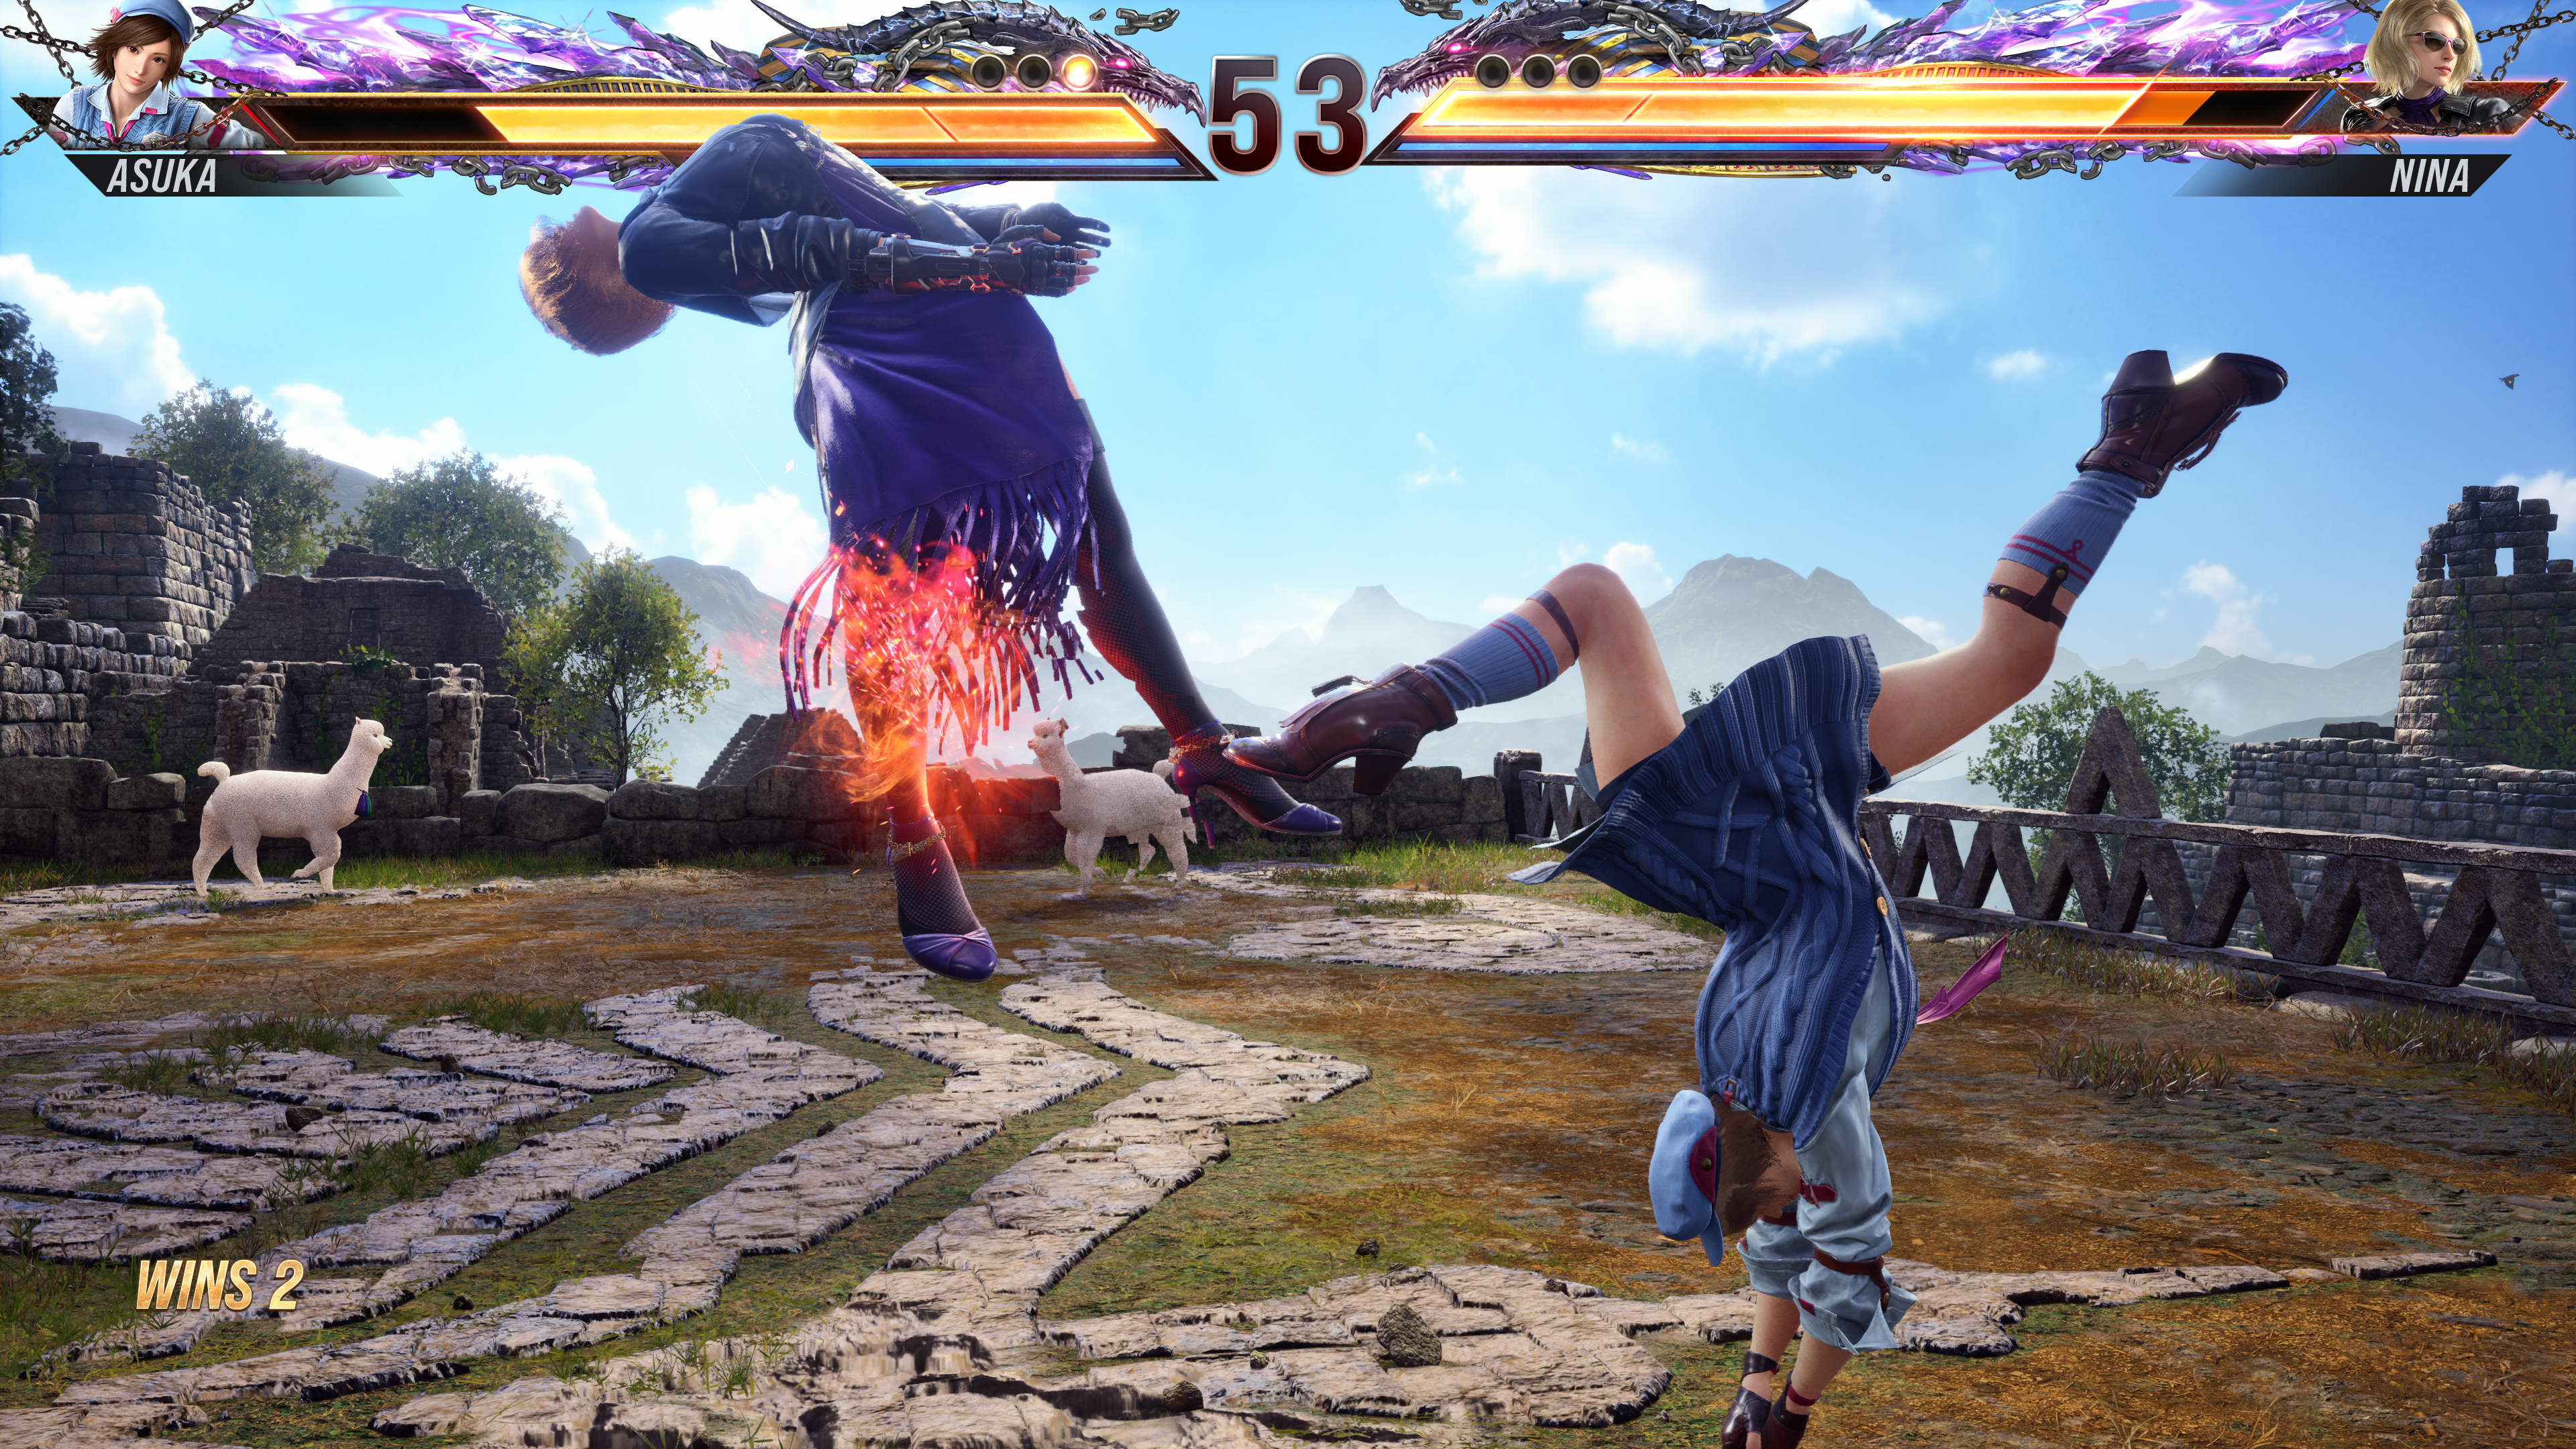 Asuka launching Nina with a backwards cartwheel in Tekken 8